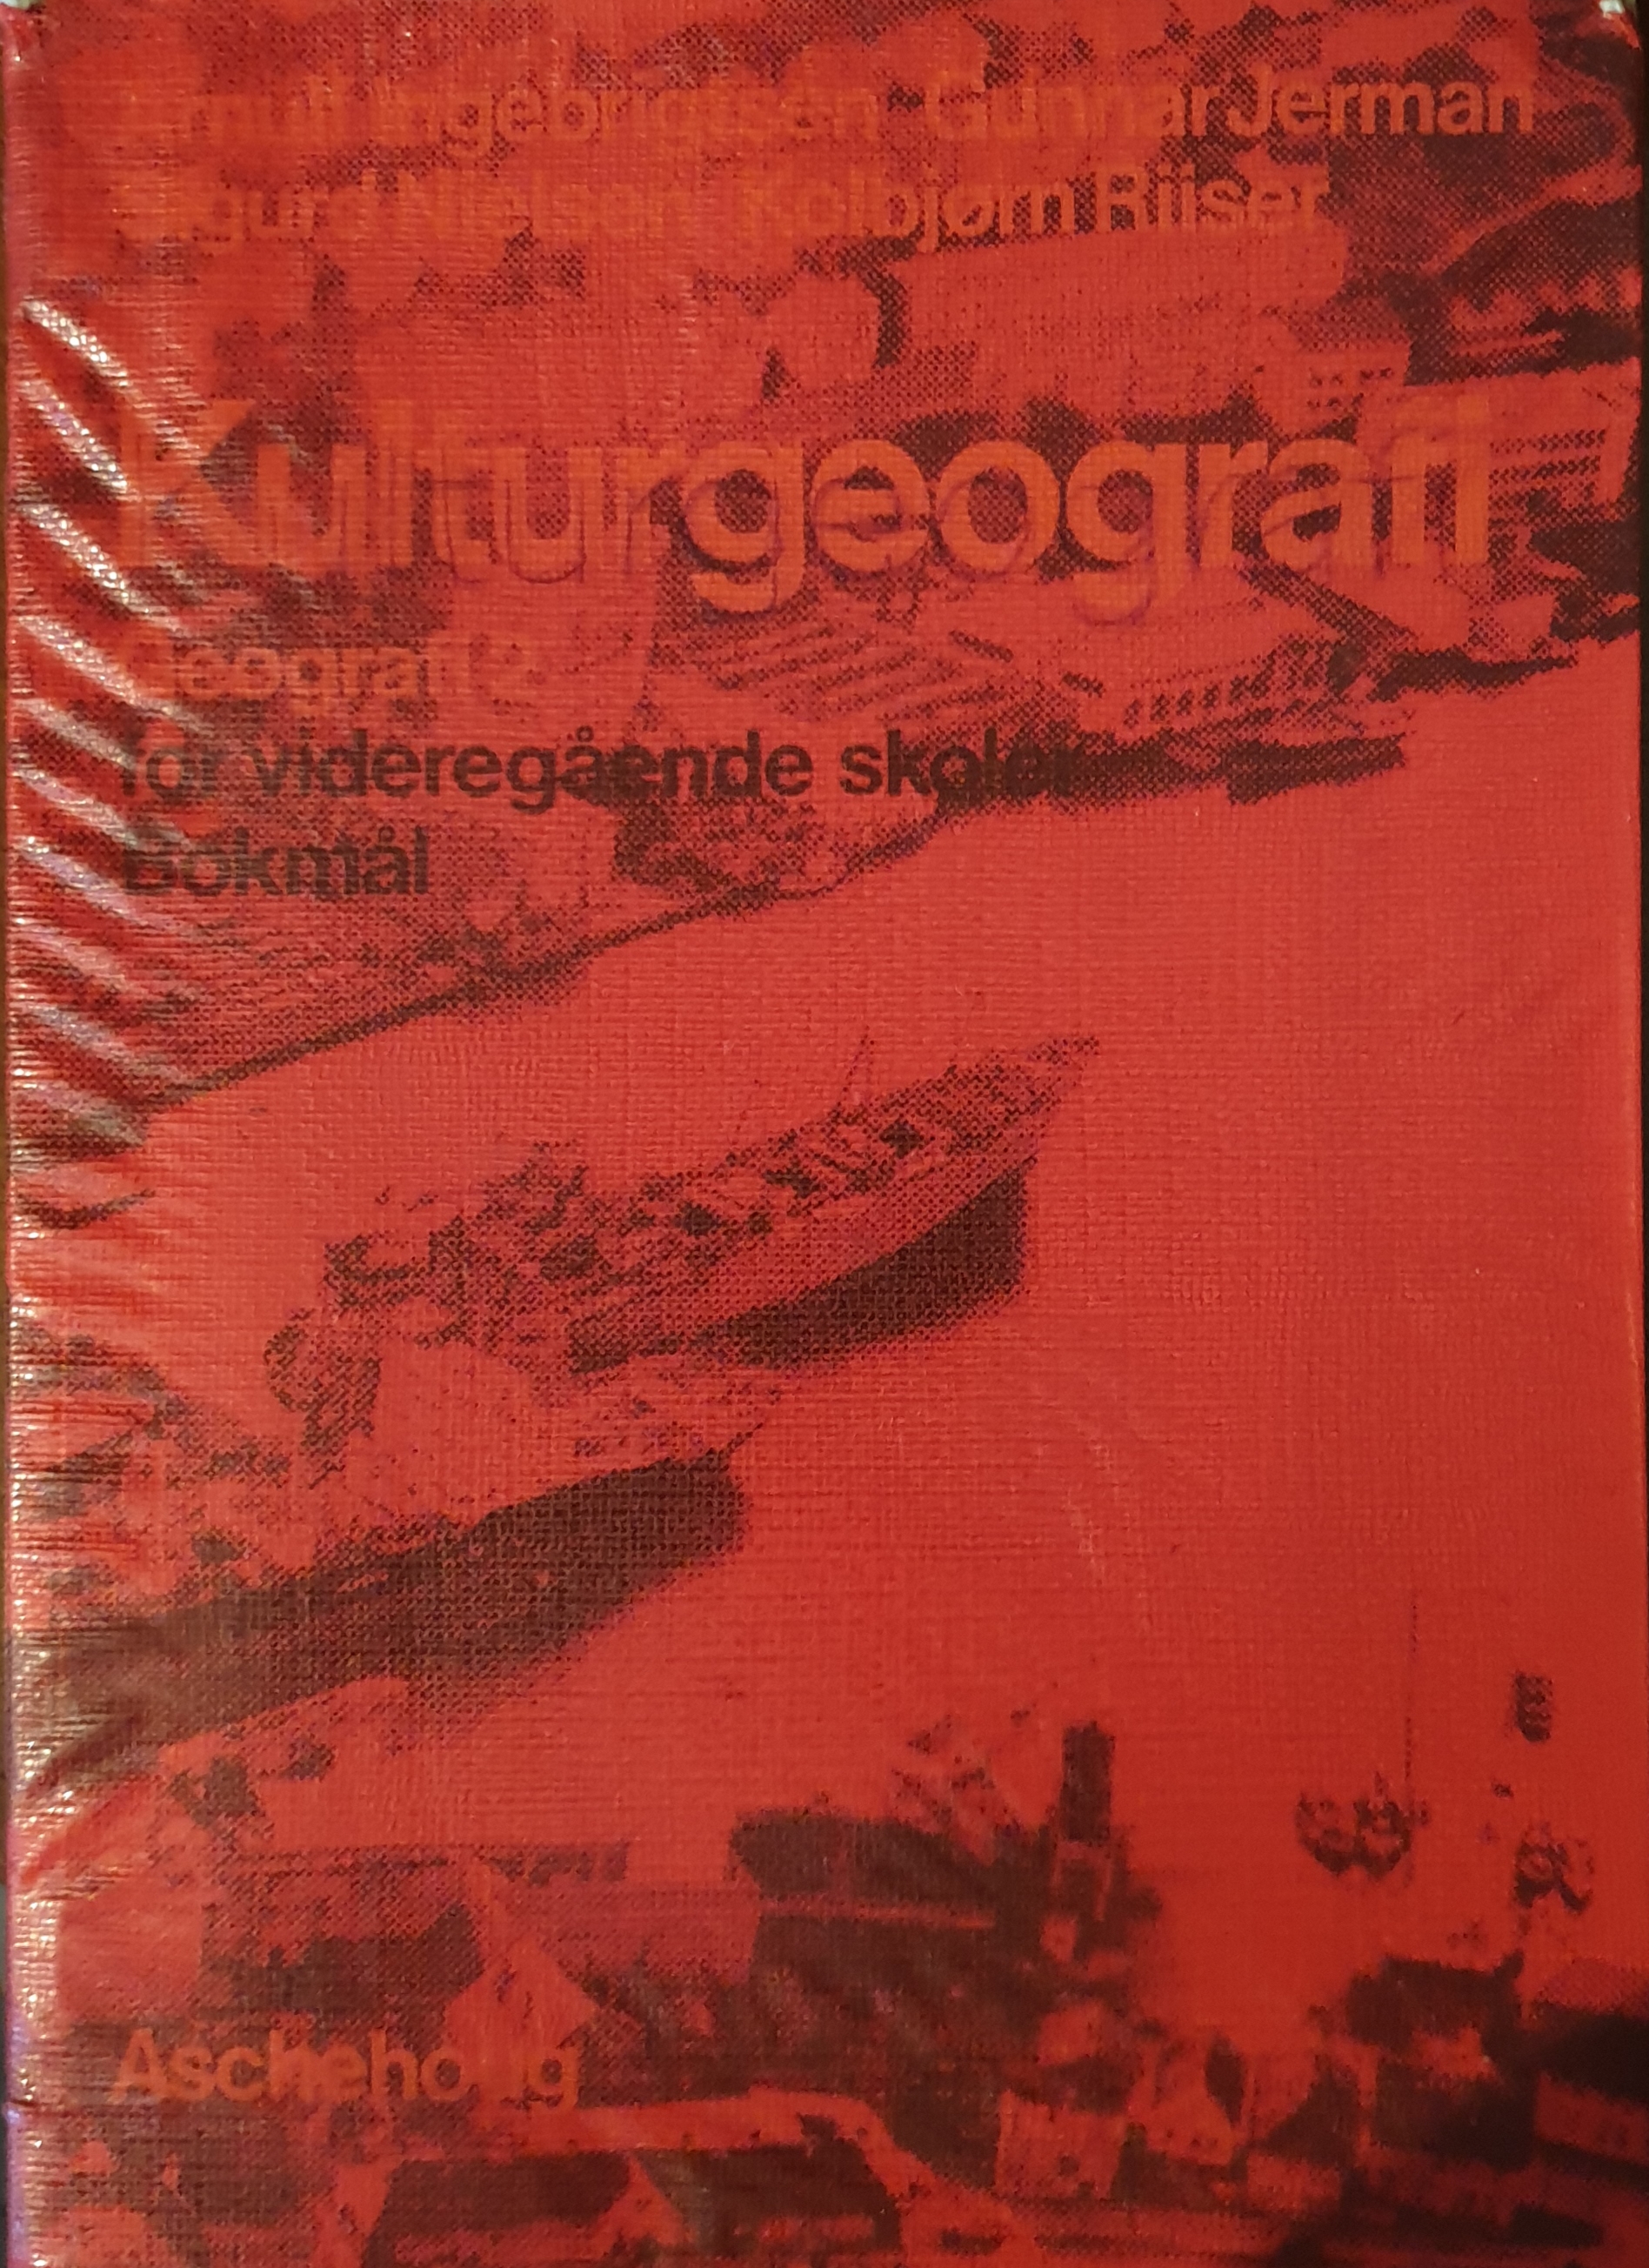 Kulturgeografi : geografi 2 for videregående skoler